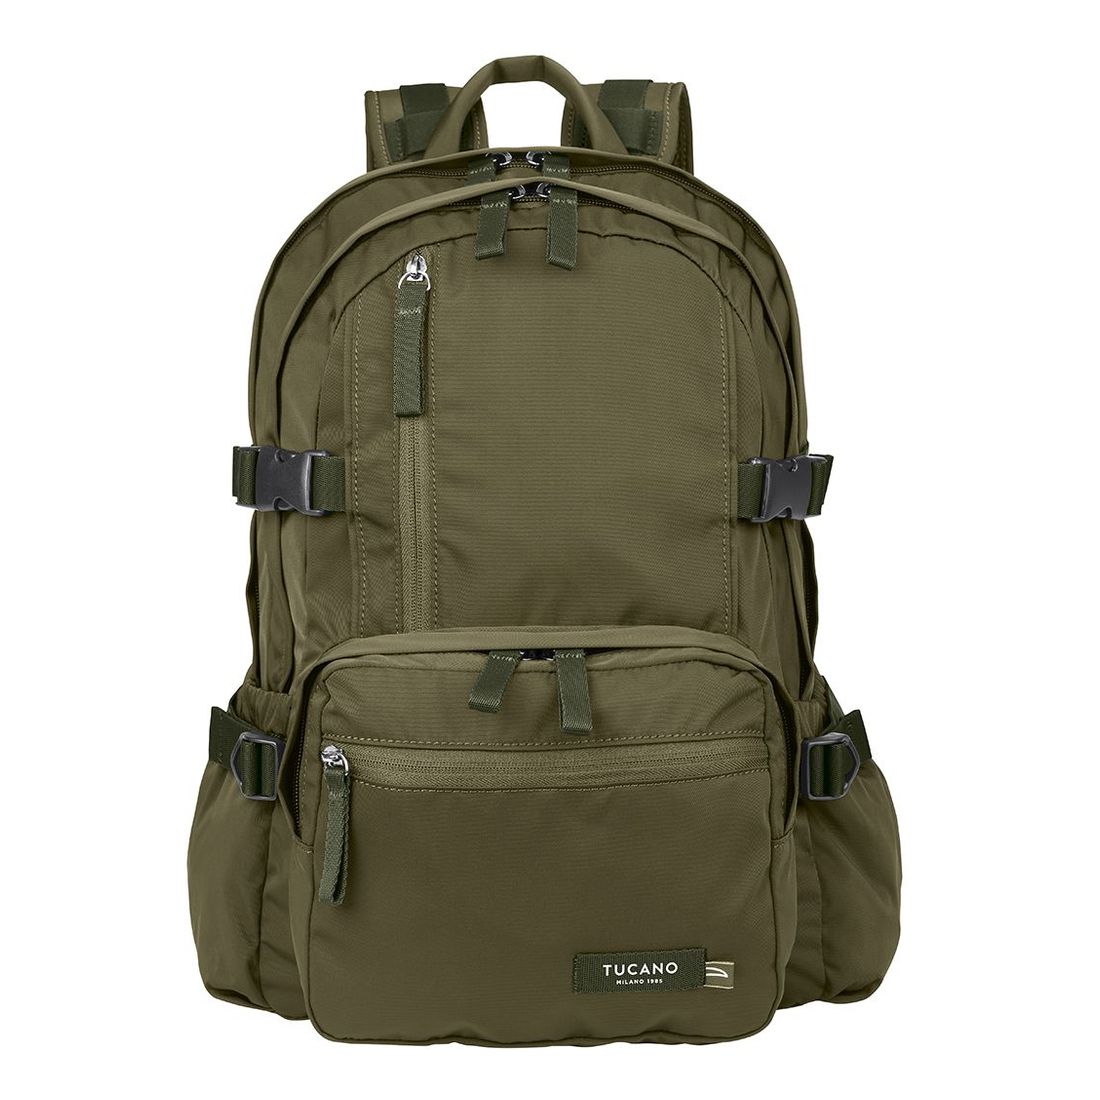 Tucano Desert Backpack 15.6-Inch - Military Green